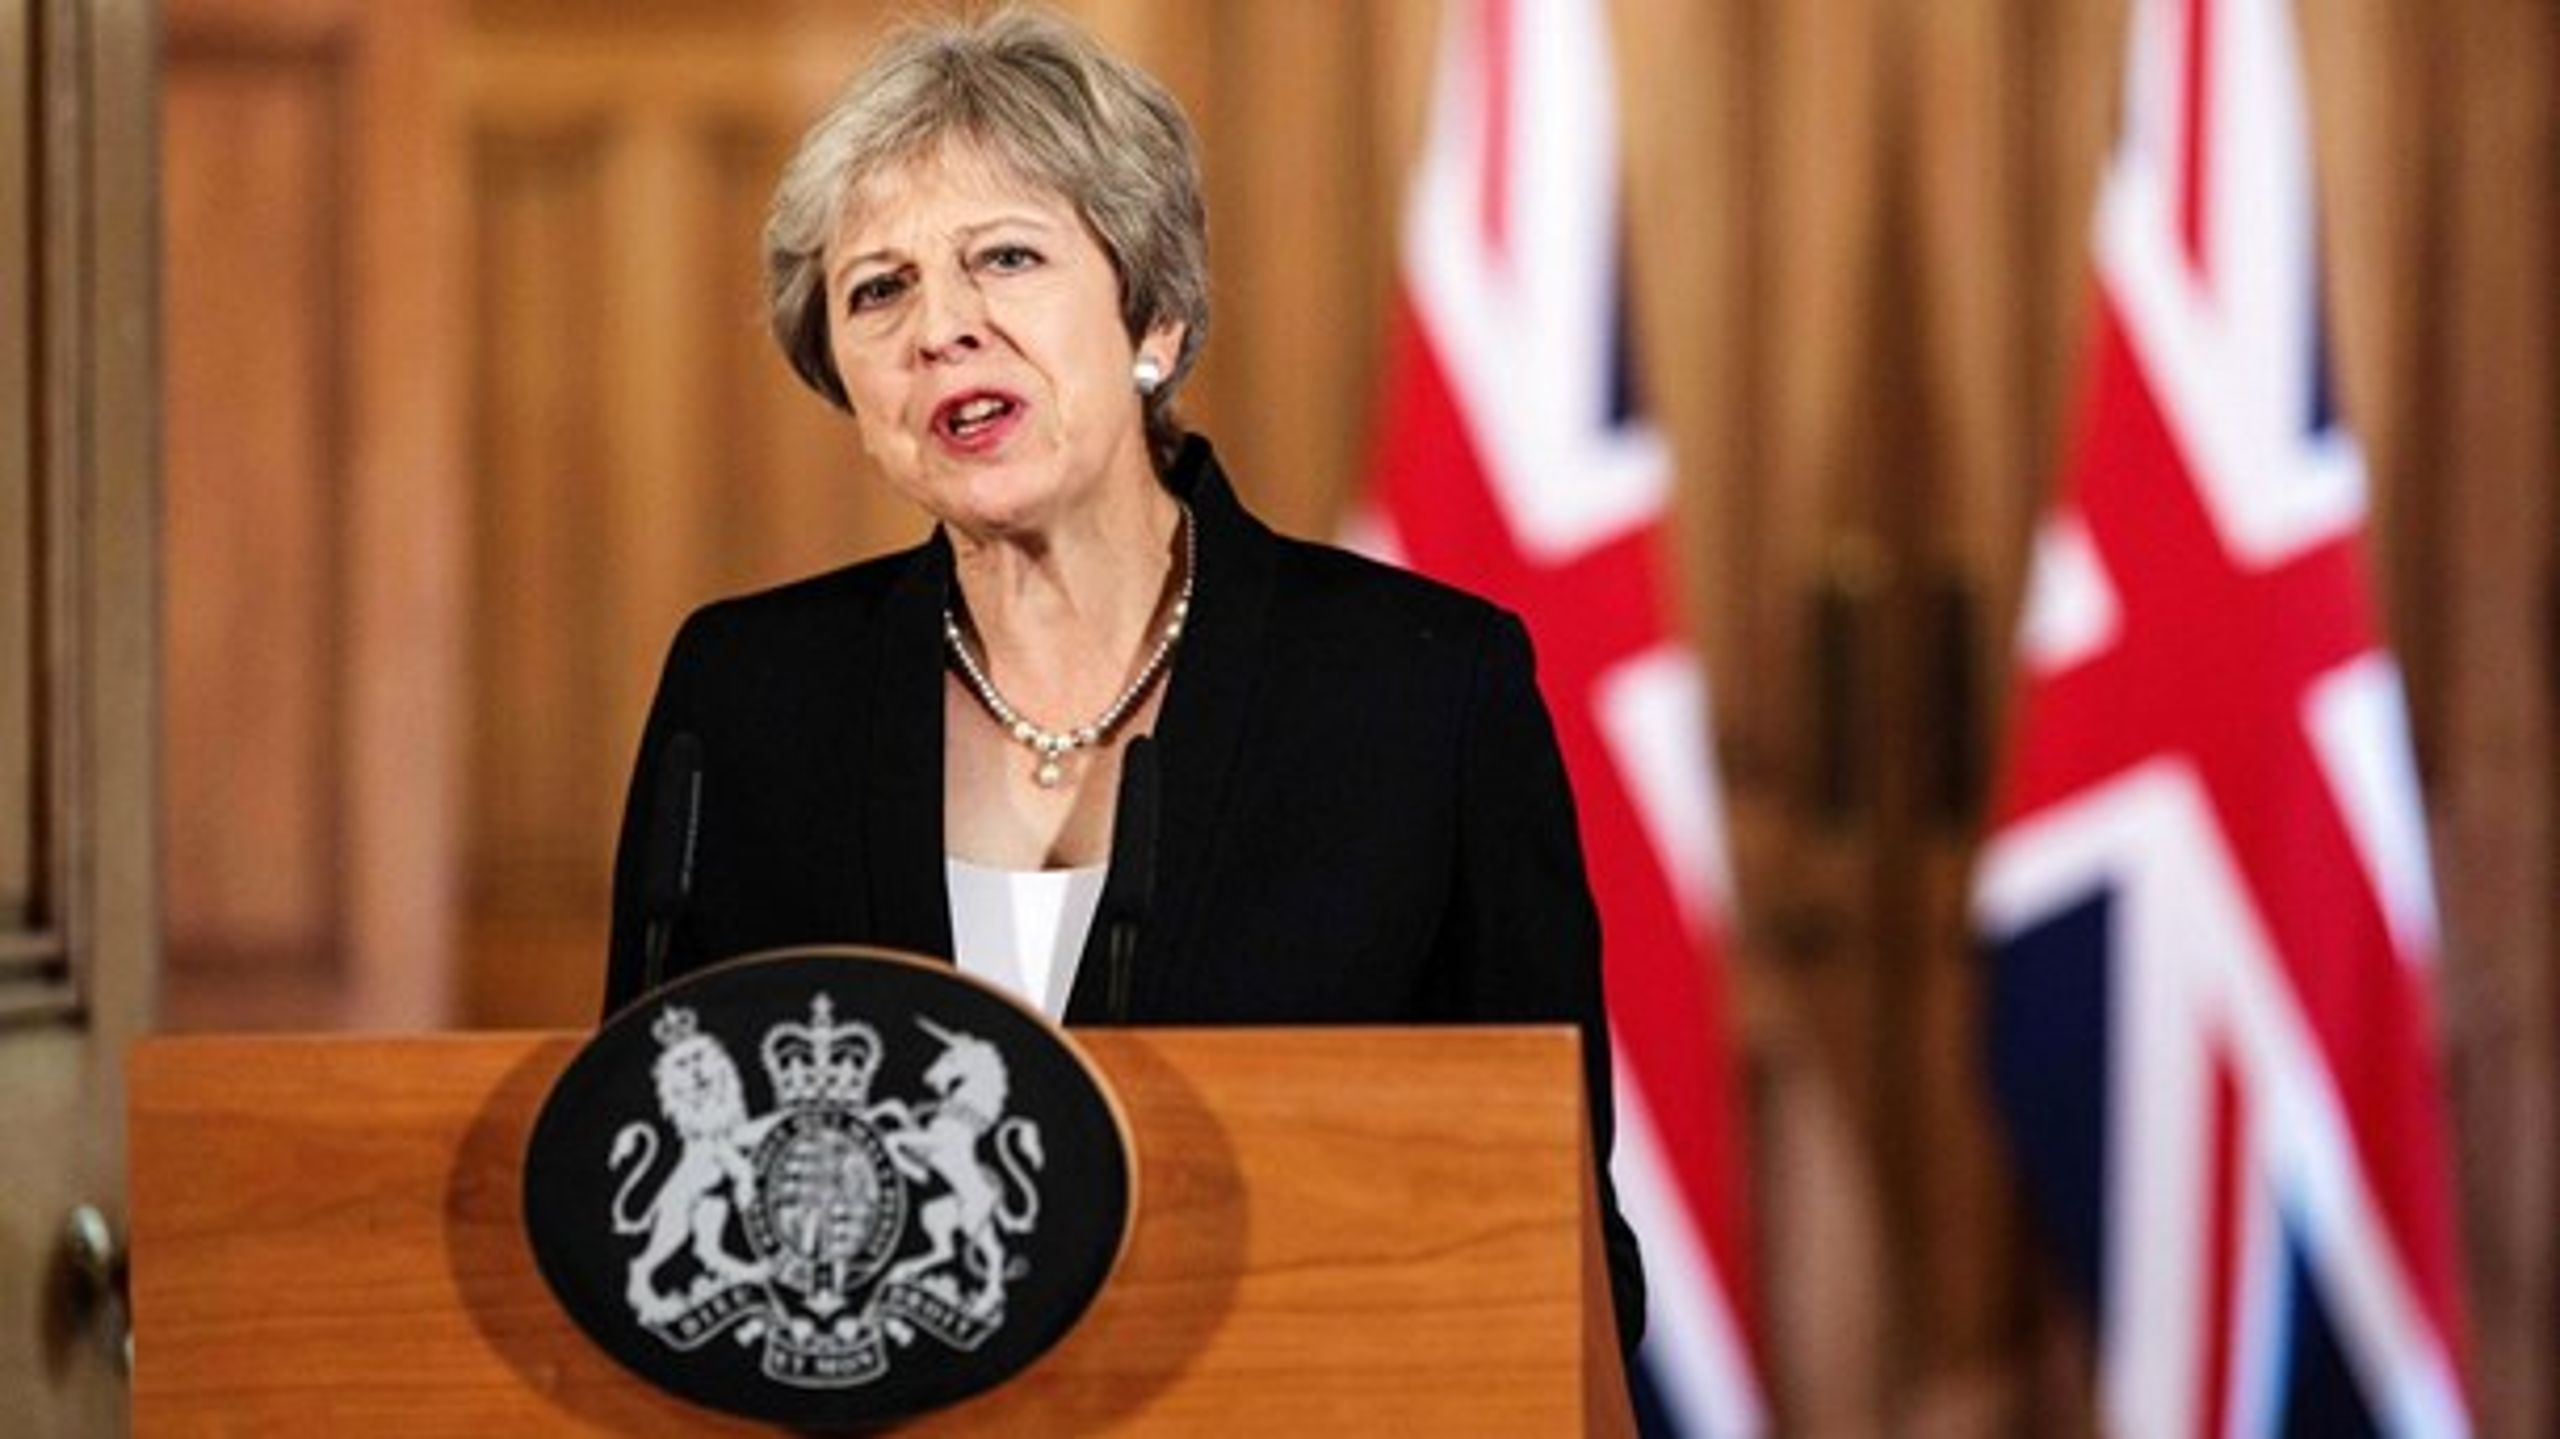 Den britiske premierminister, Theresa May, står over for&nbsp;en partikonference, der kan blive afgørende for Brexit-forhandlingerne og for hendes eget politiske liv.